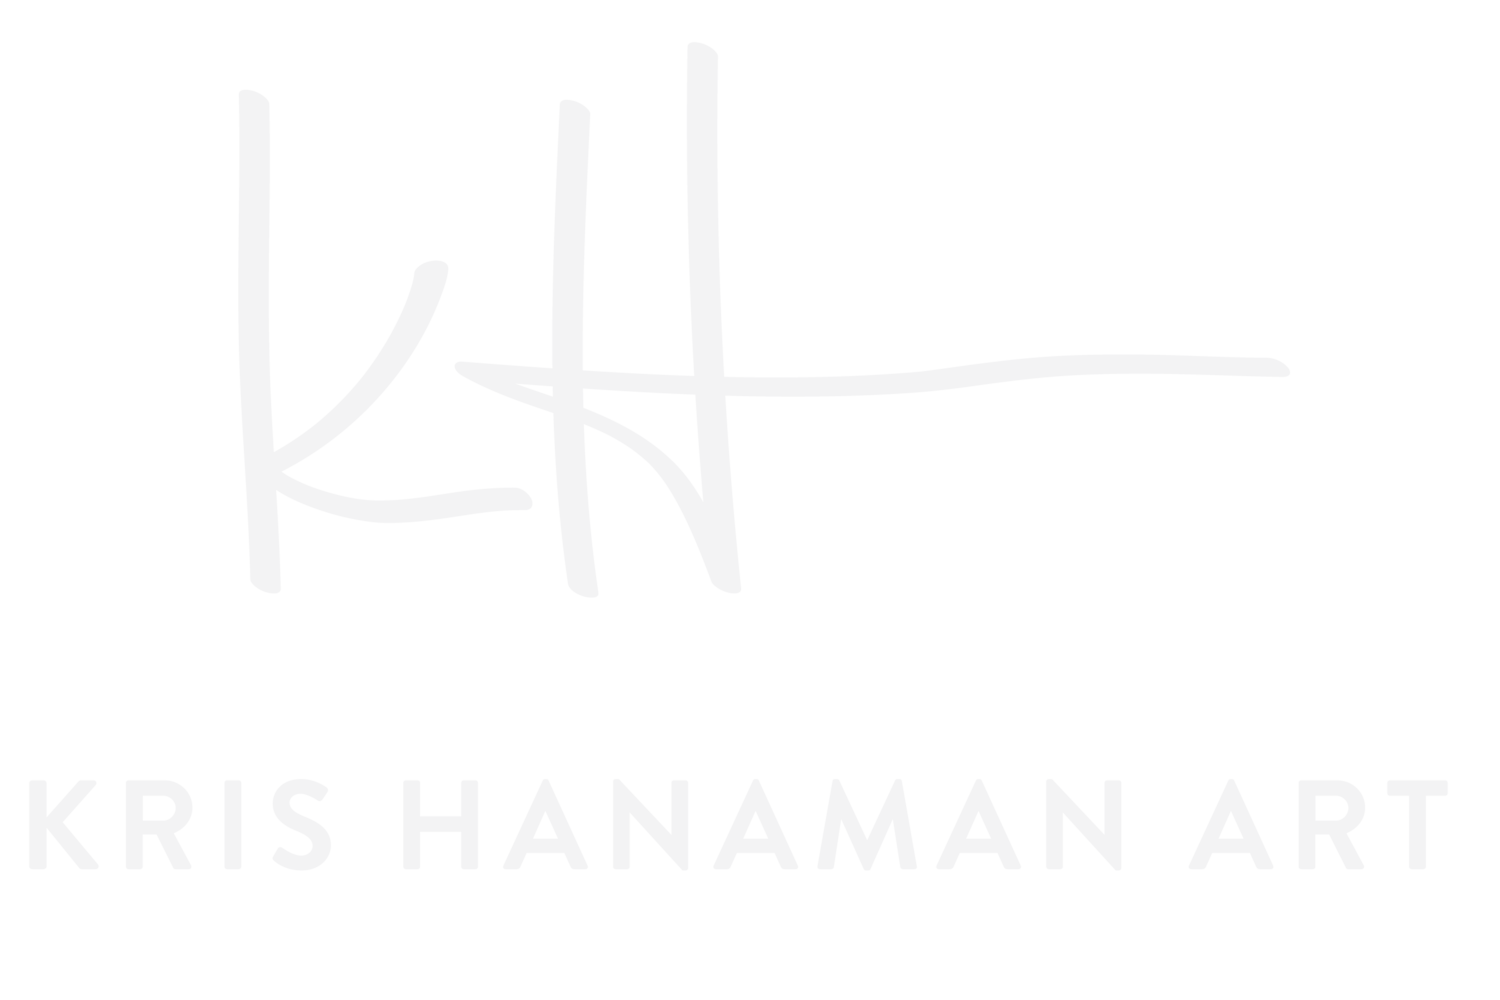 Kris Hanaman Art